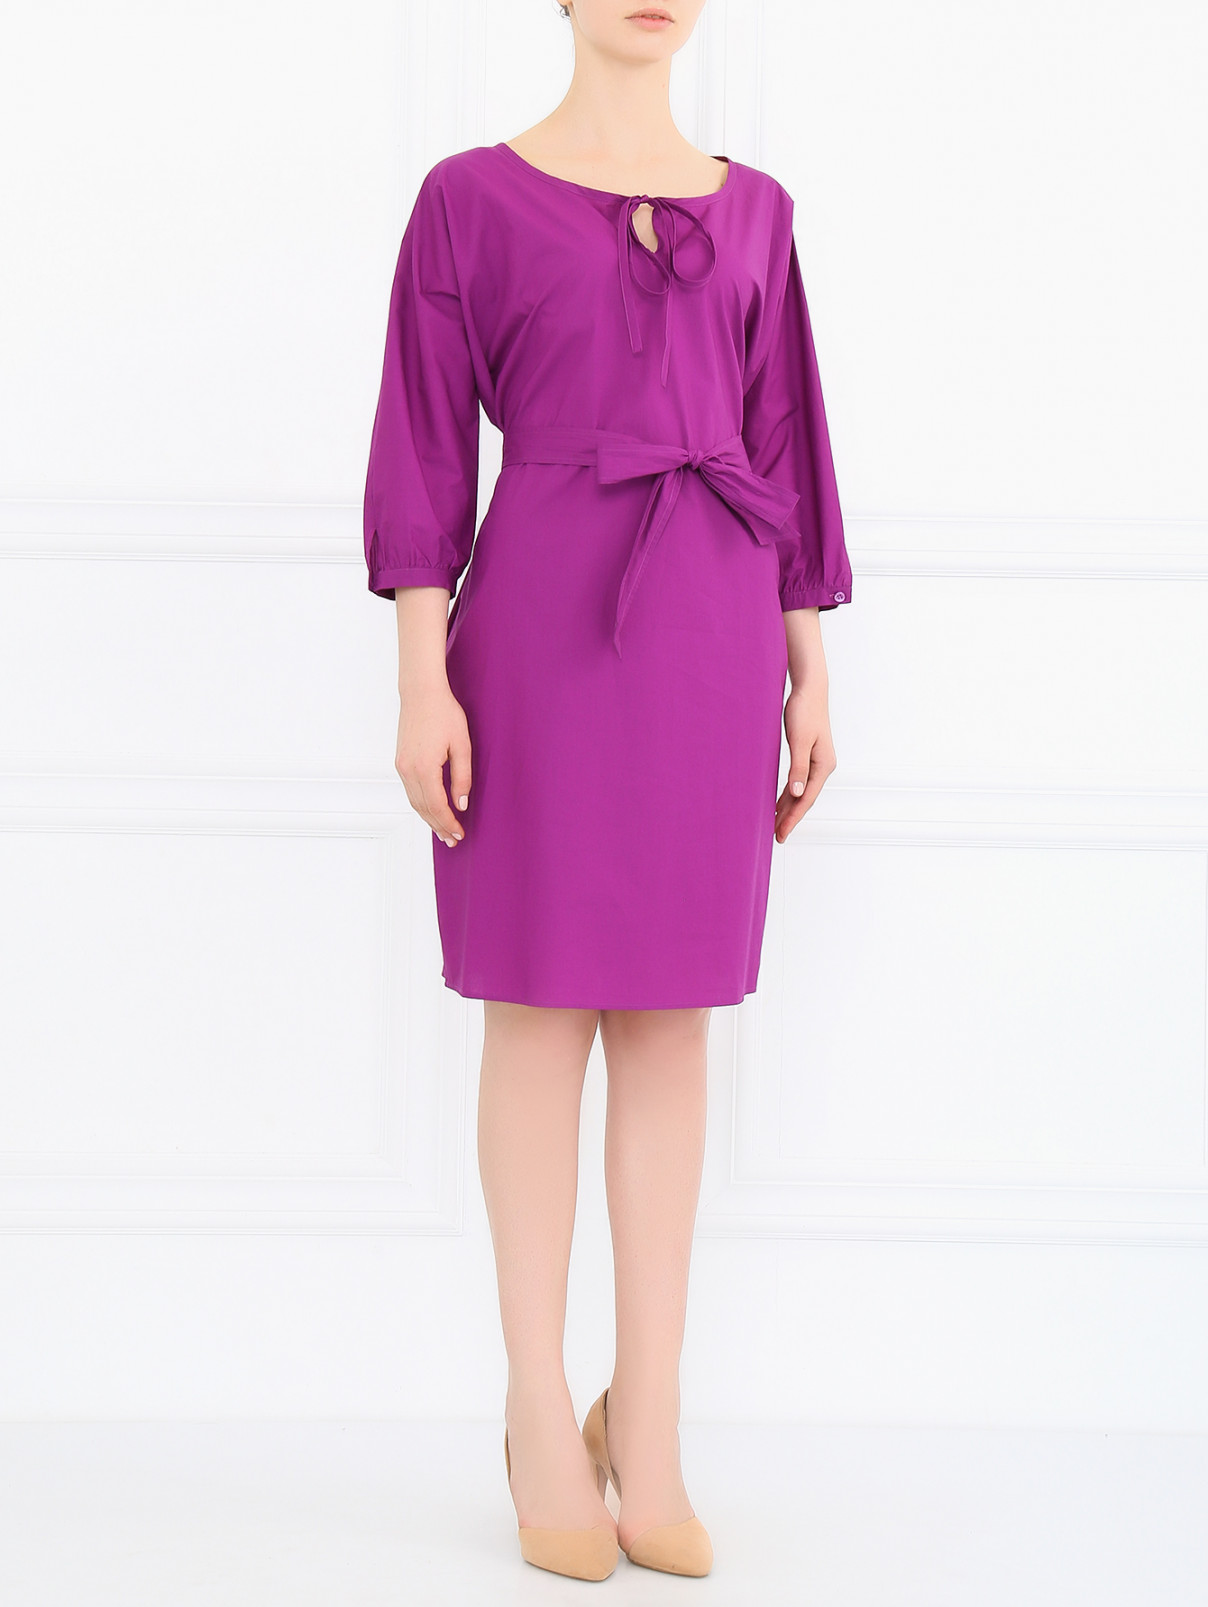 Платье из хлопка с рукавами 3/4 Moschino Cheap&Chic  –  Модель Общий вид  – Цвет:  Фиолетовый